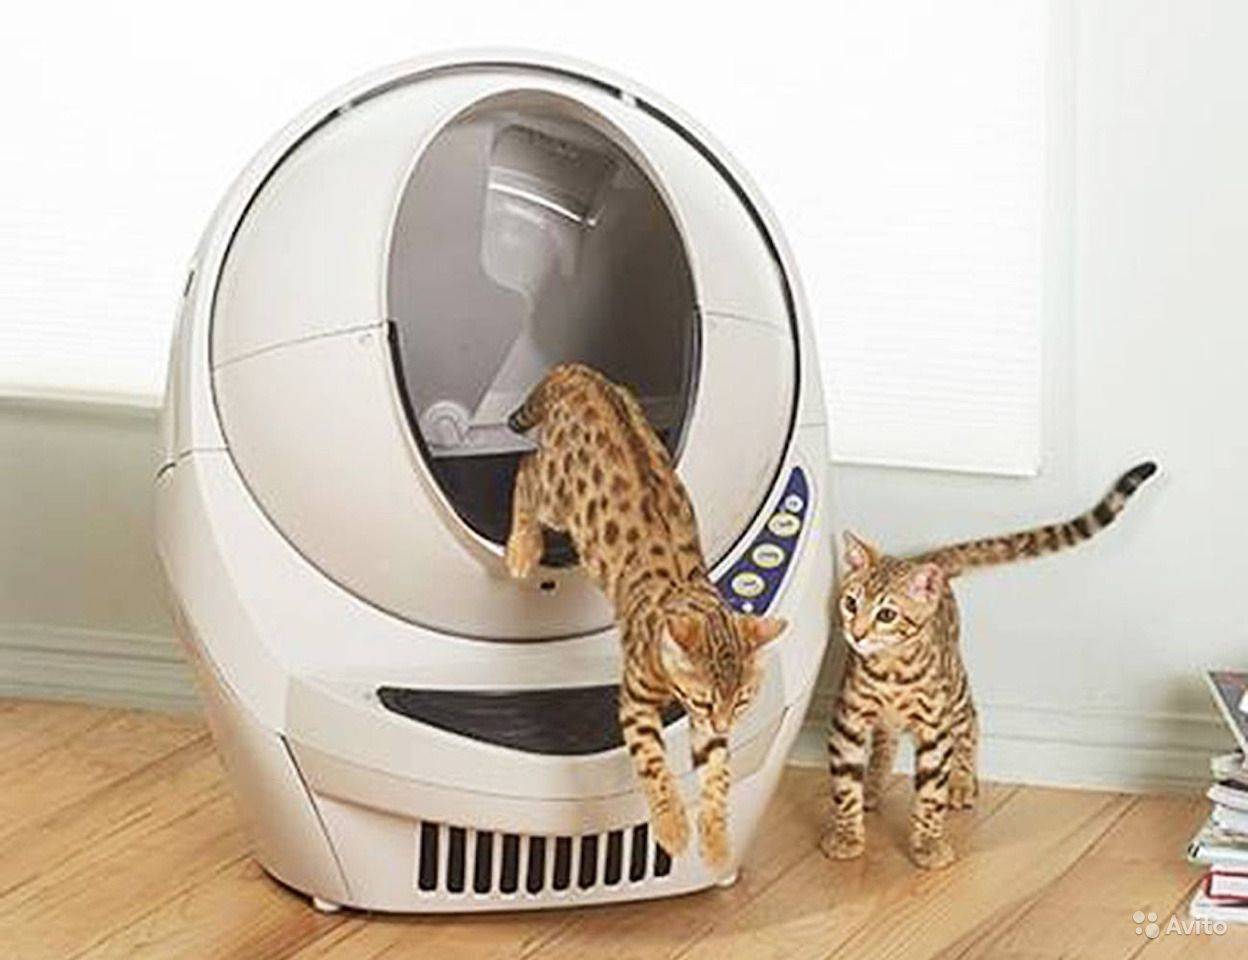 Автоматический туалет для кошек — что это такое? виды самоочищающихся туалетов и правила выбора